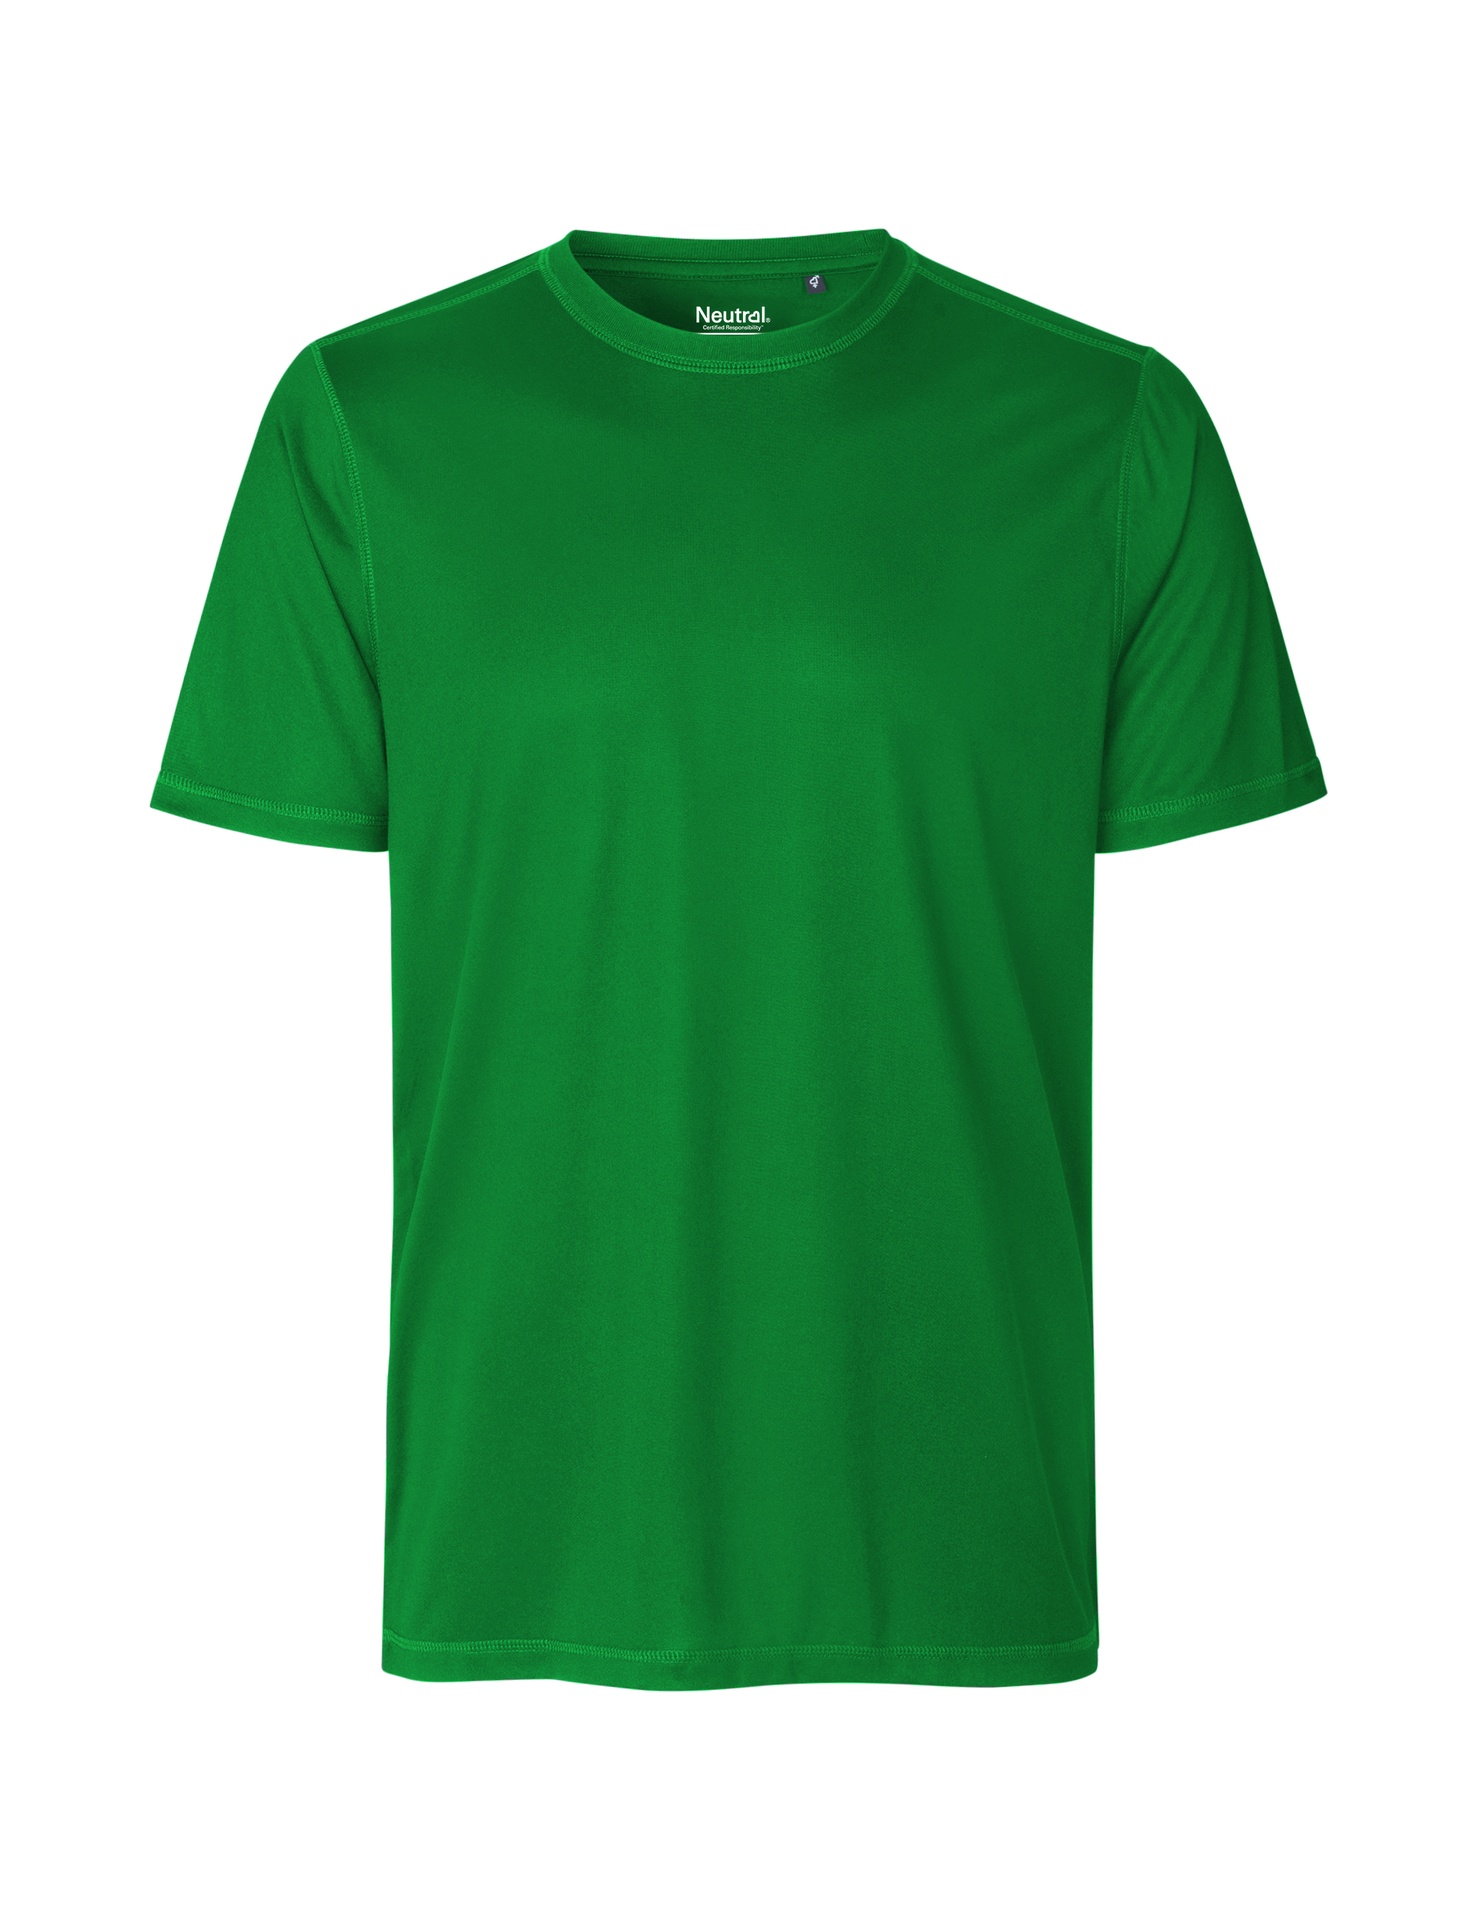 [PR/03813] Recycled Performance T-Shirt (Green 67, 3XL)